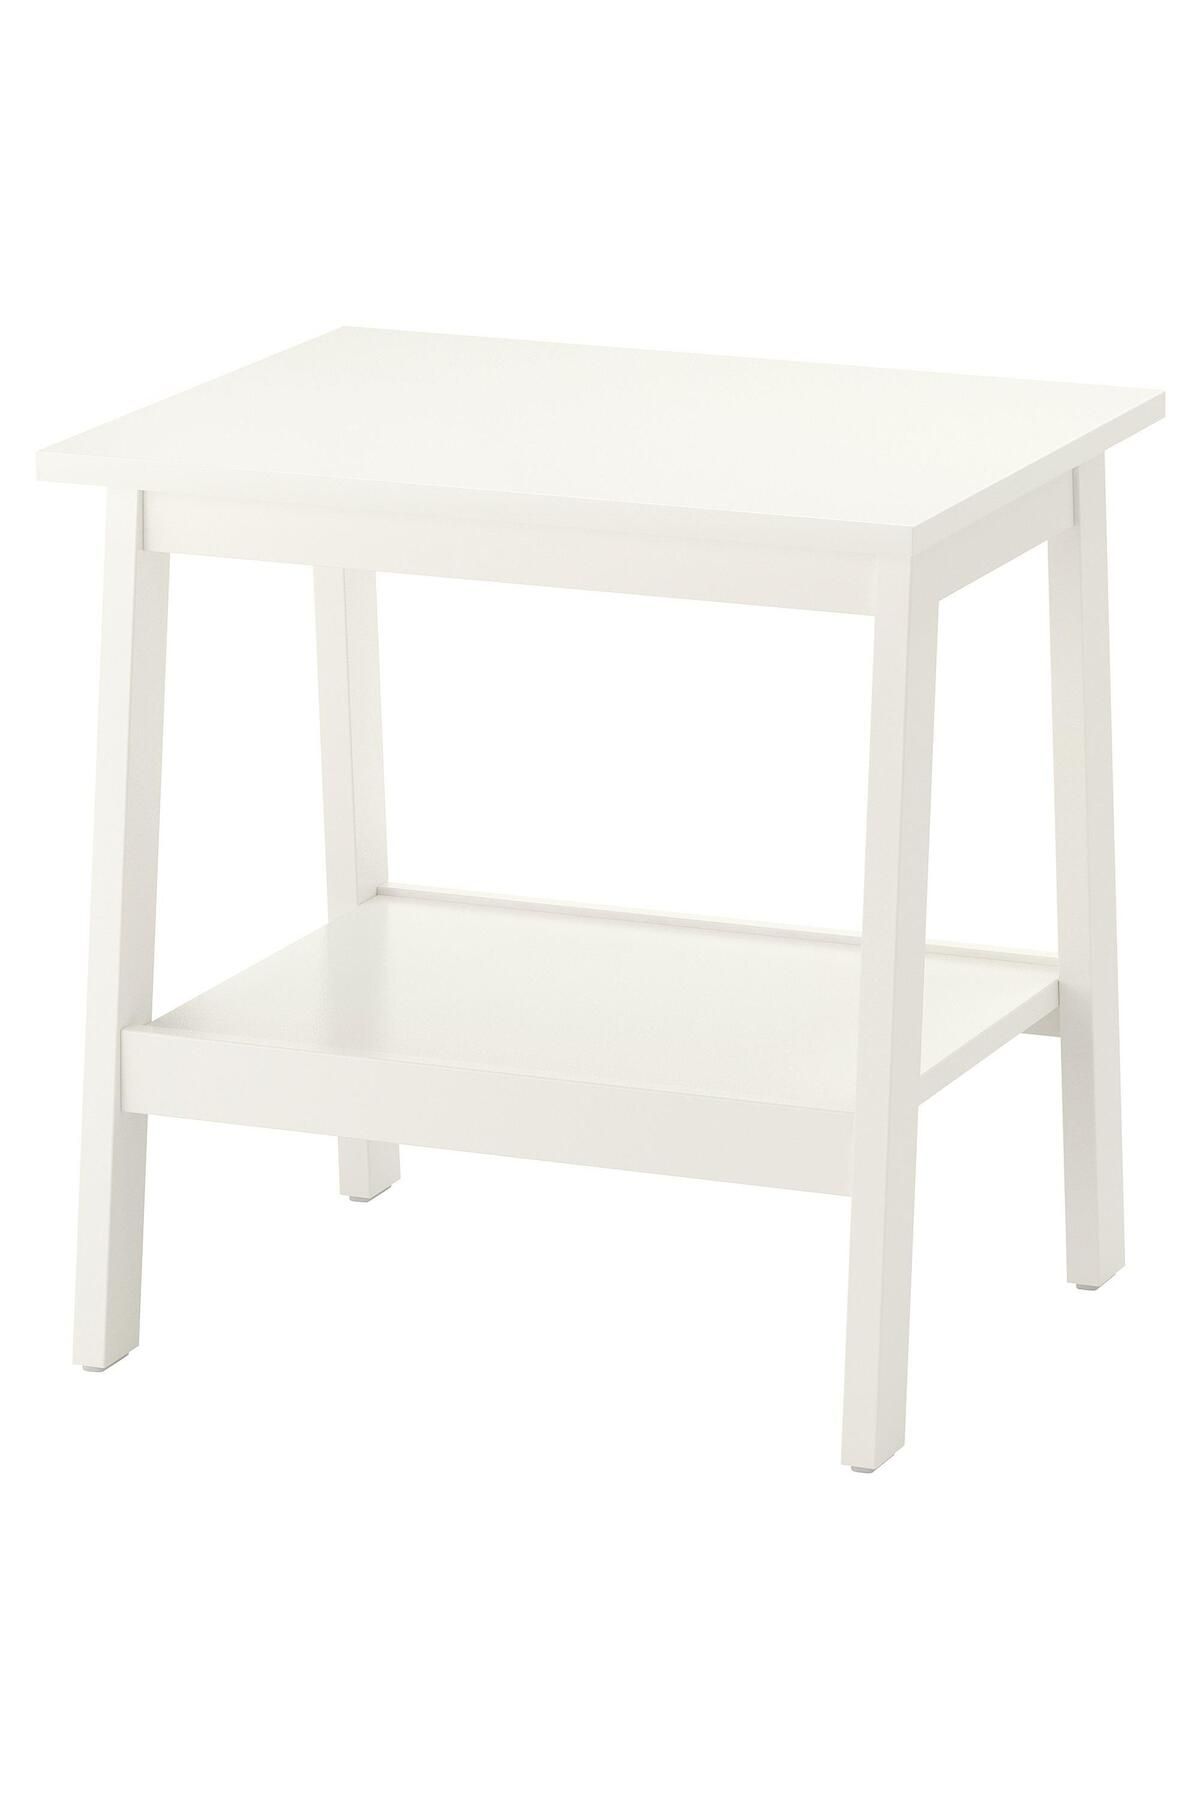 IKEA 2 Katlı Yan Sehpa, Beyaz Renk Meridyendukkan 55x45 Cm Sade Tasarım